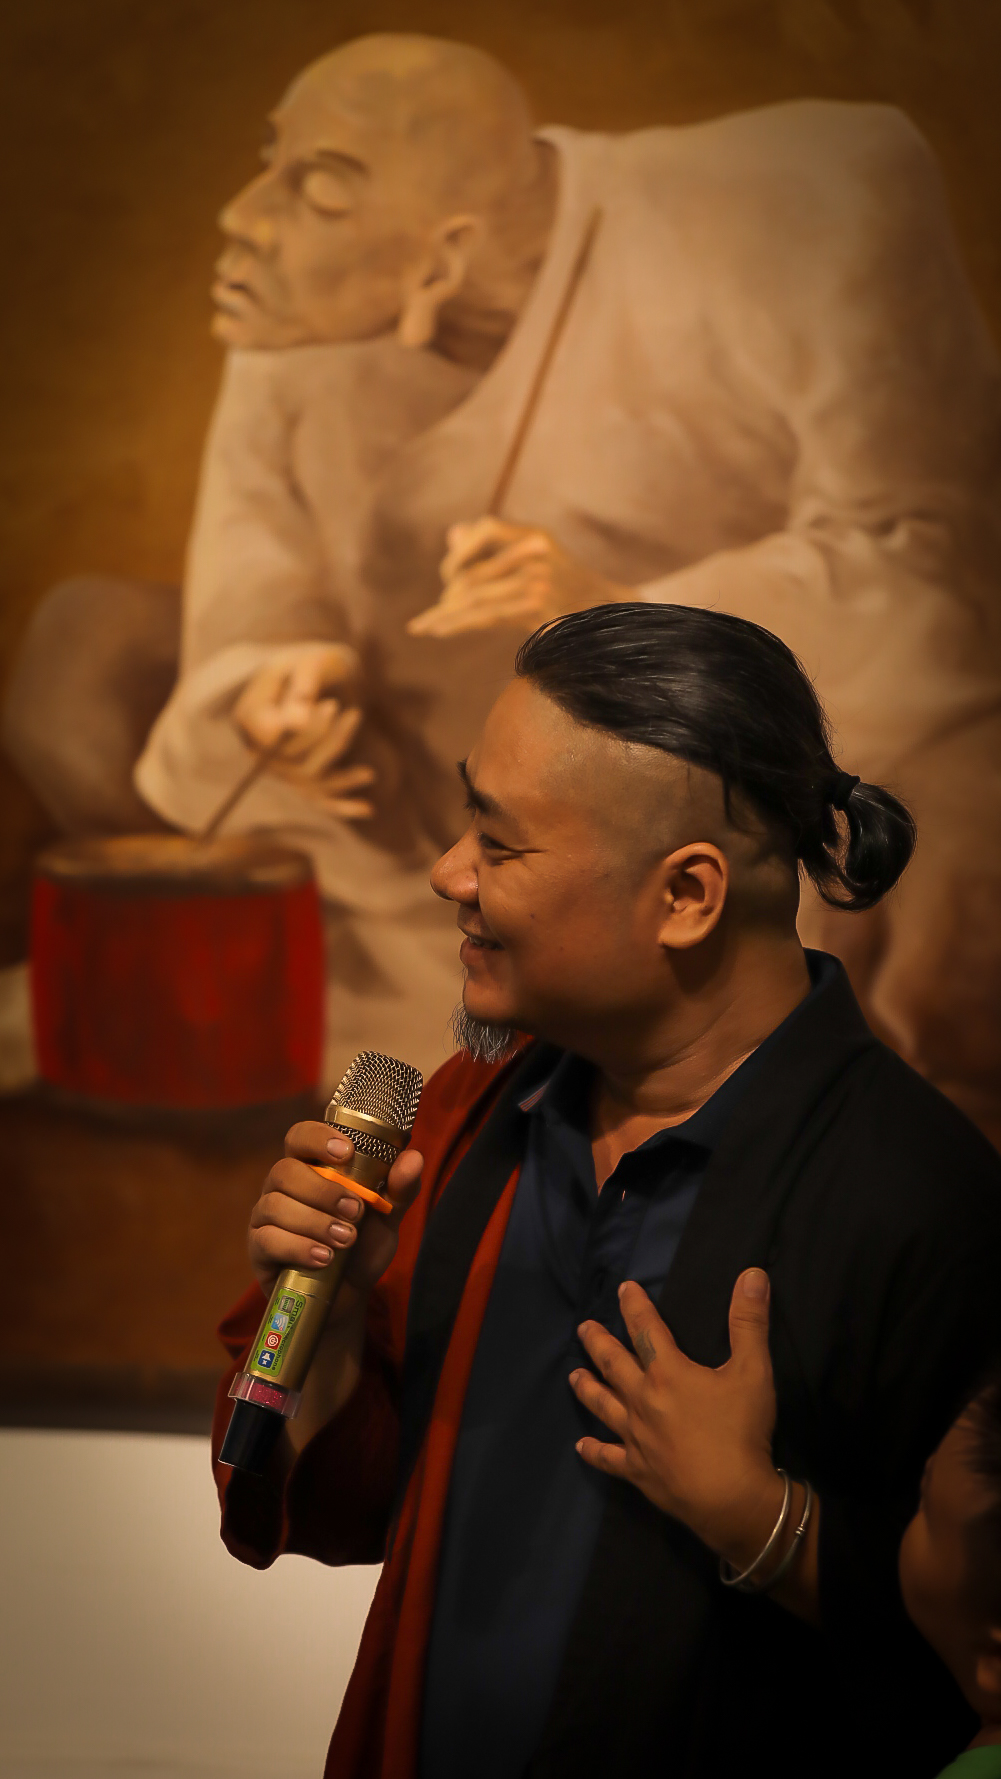 Họa sĩ Nguyễn Tuấn chia sẻ về triển lãm cá nhân “Tĩnh không” của anh tại Bảo tàng Mỹ thuật TPHCM từ ngày 9 đến 15/9 - Ảnh: Quốc Ngọc